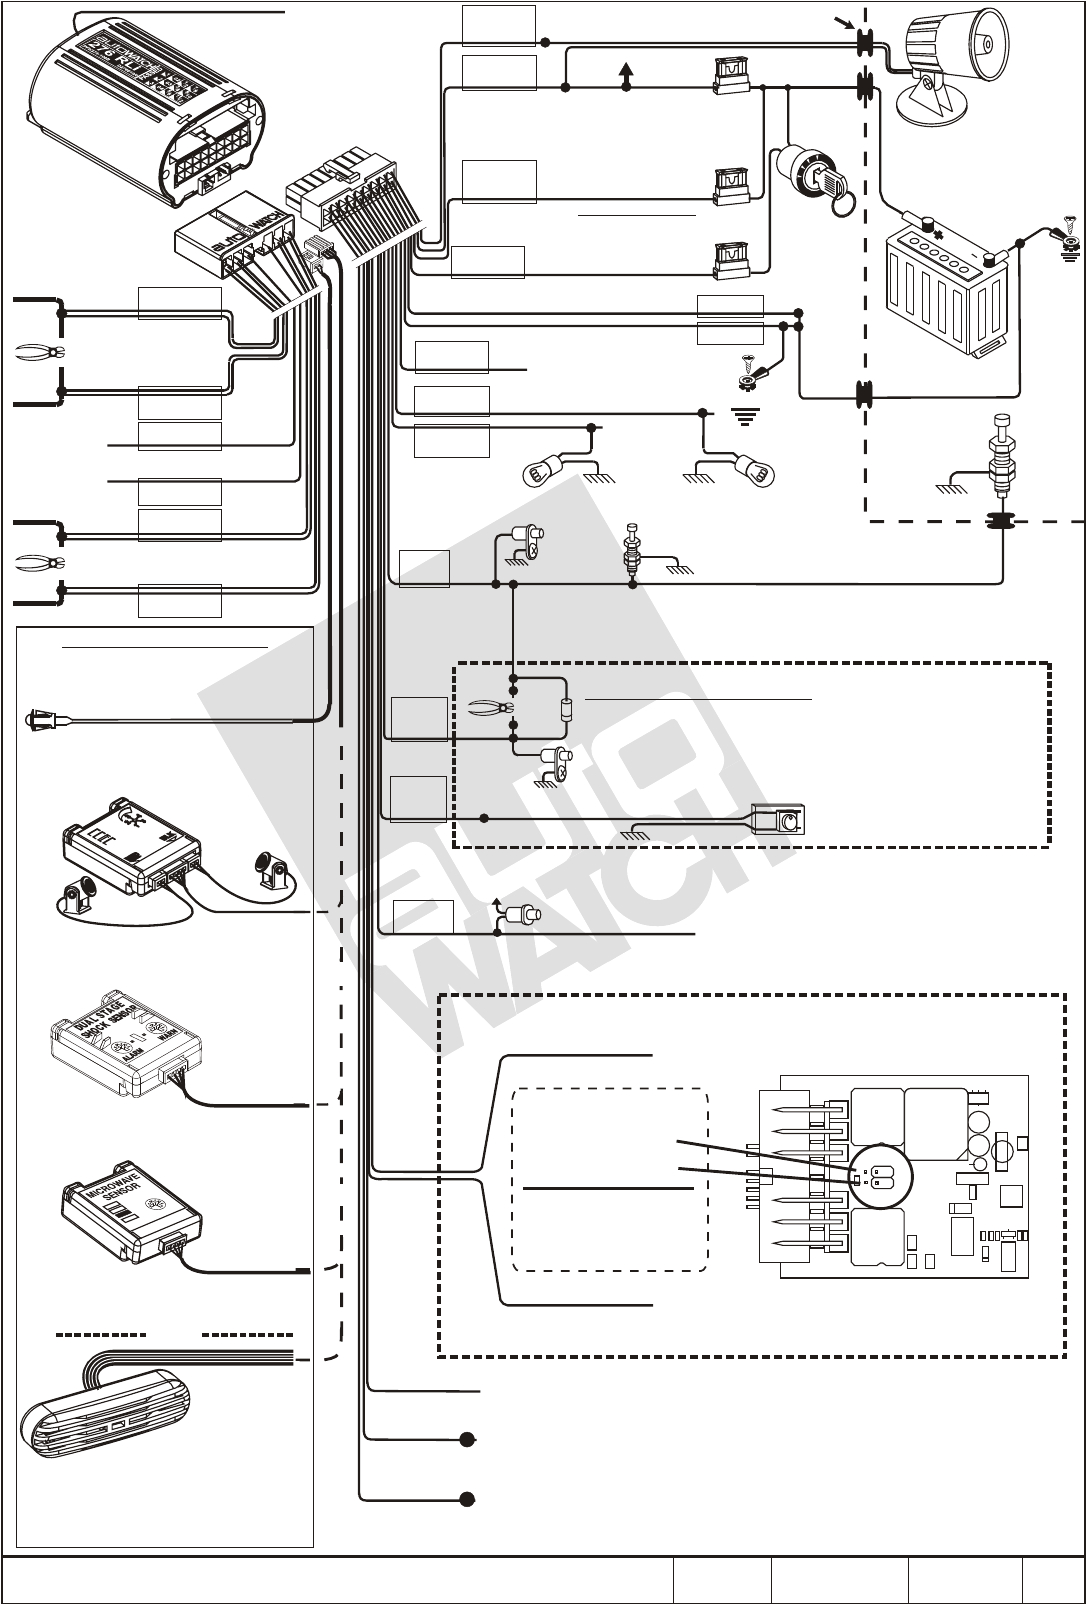 pursuit car alarm wiring diagram audiovox prestige cobra on audiovox car alarm wiring diagram jpg